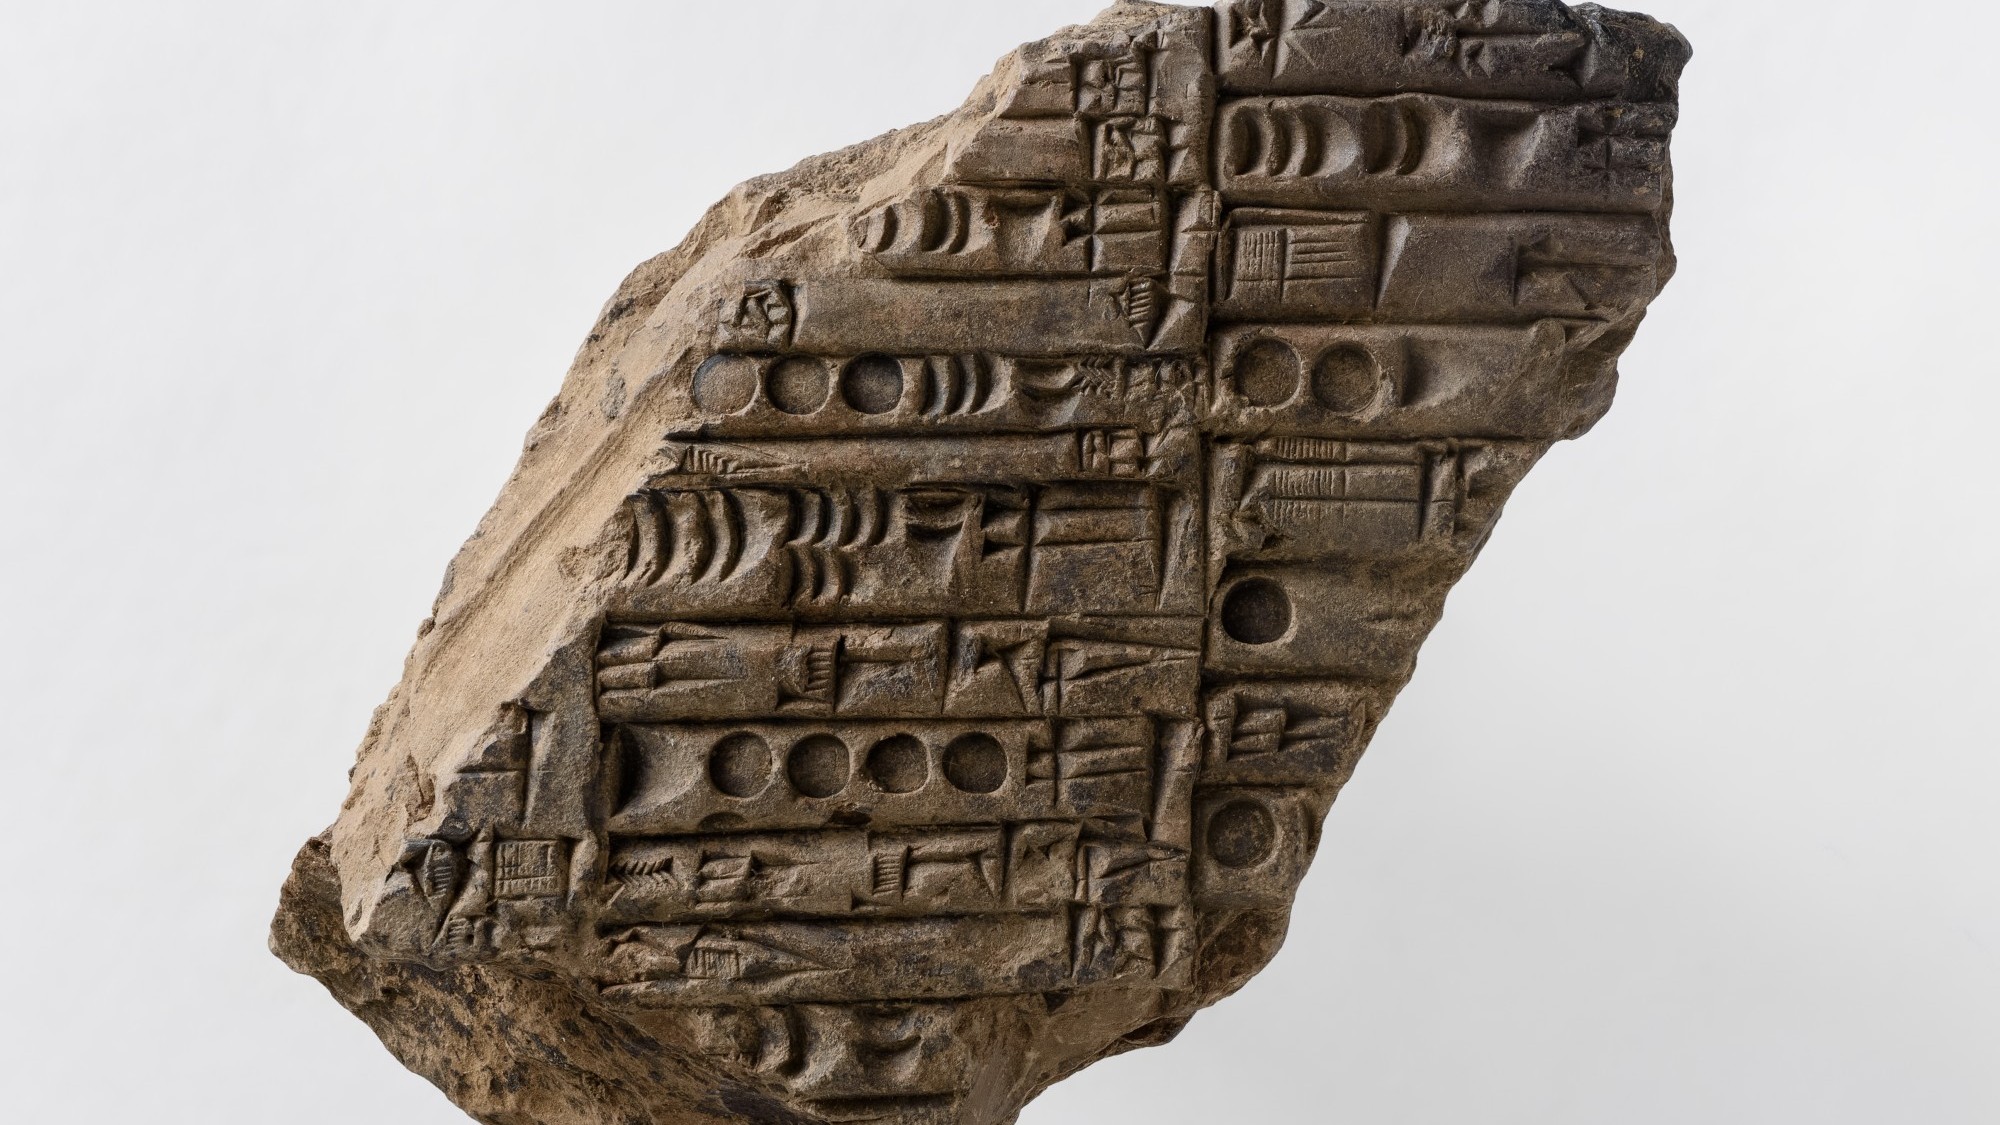 Tafel mit sumerischer Keilschrift